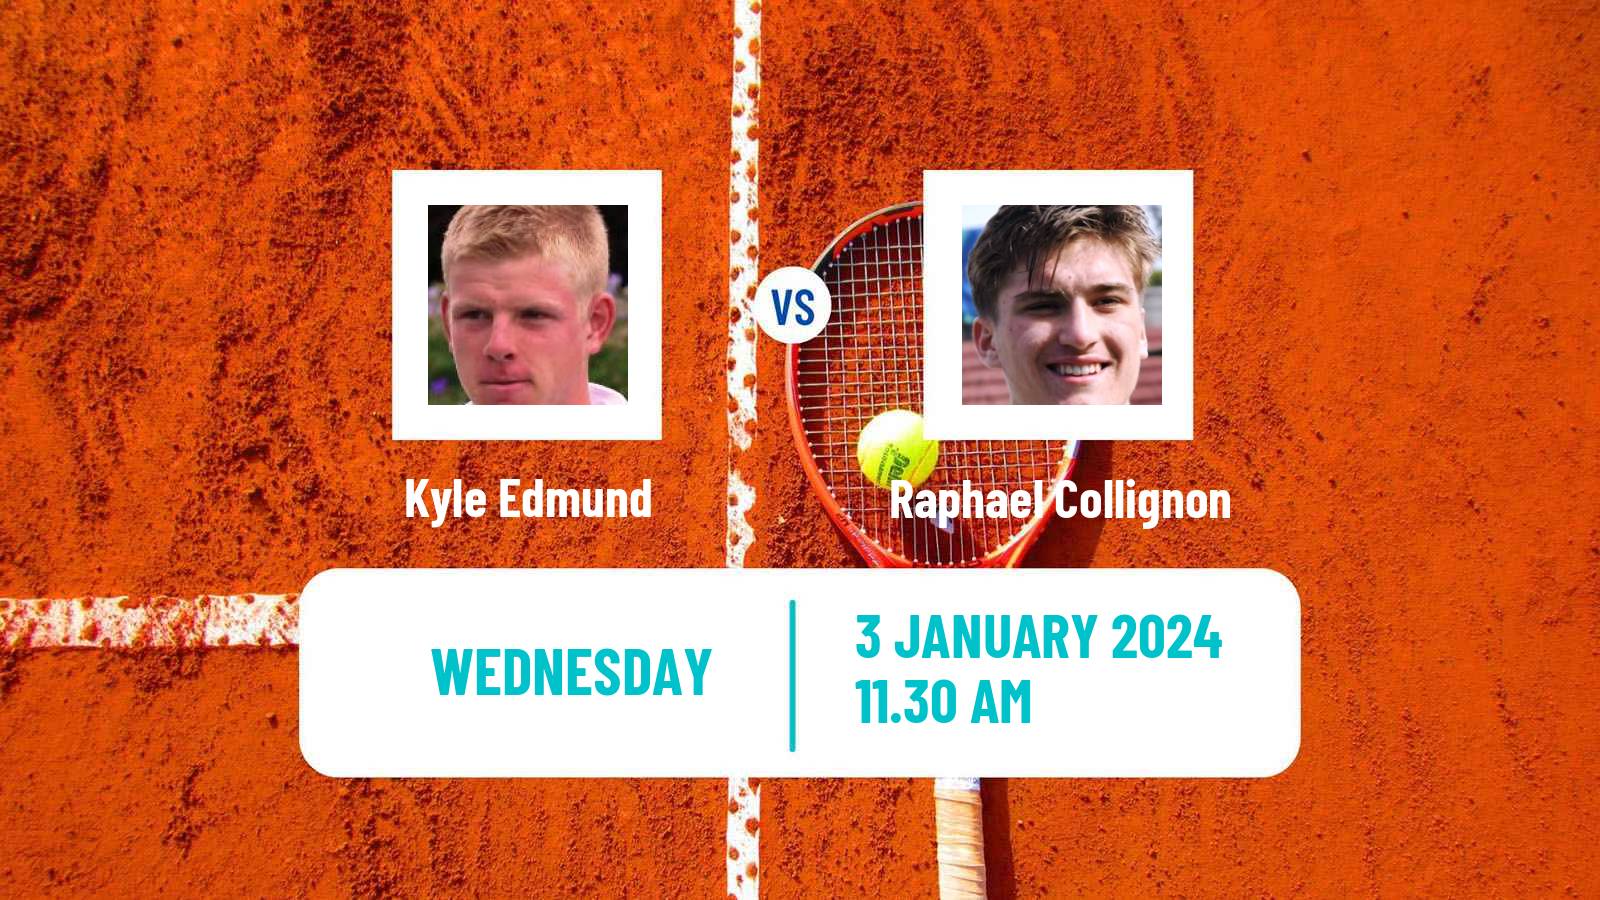 Tennis ITF M25 Esch Alzette Men Kyle Edmund - Raphael Collignon